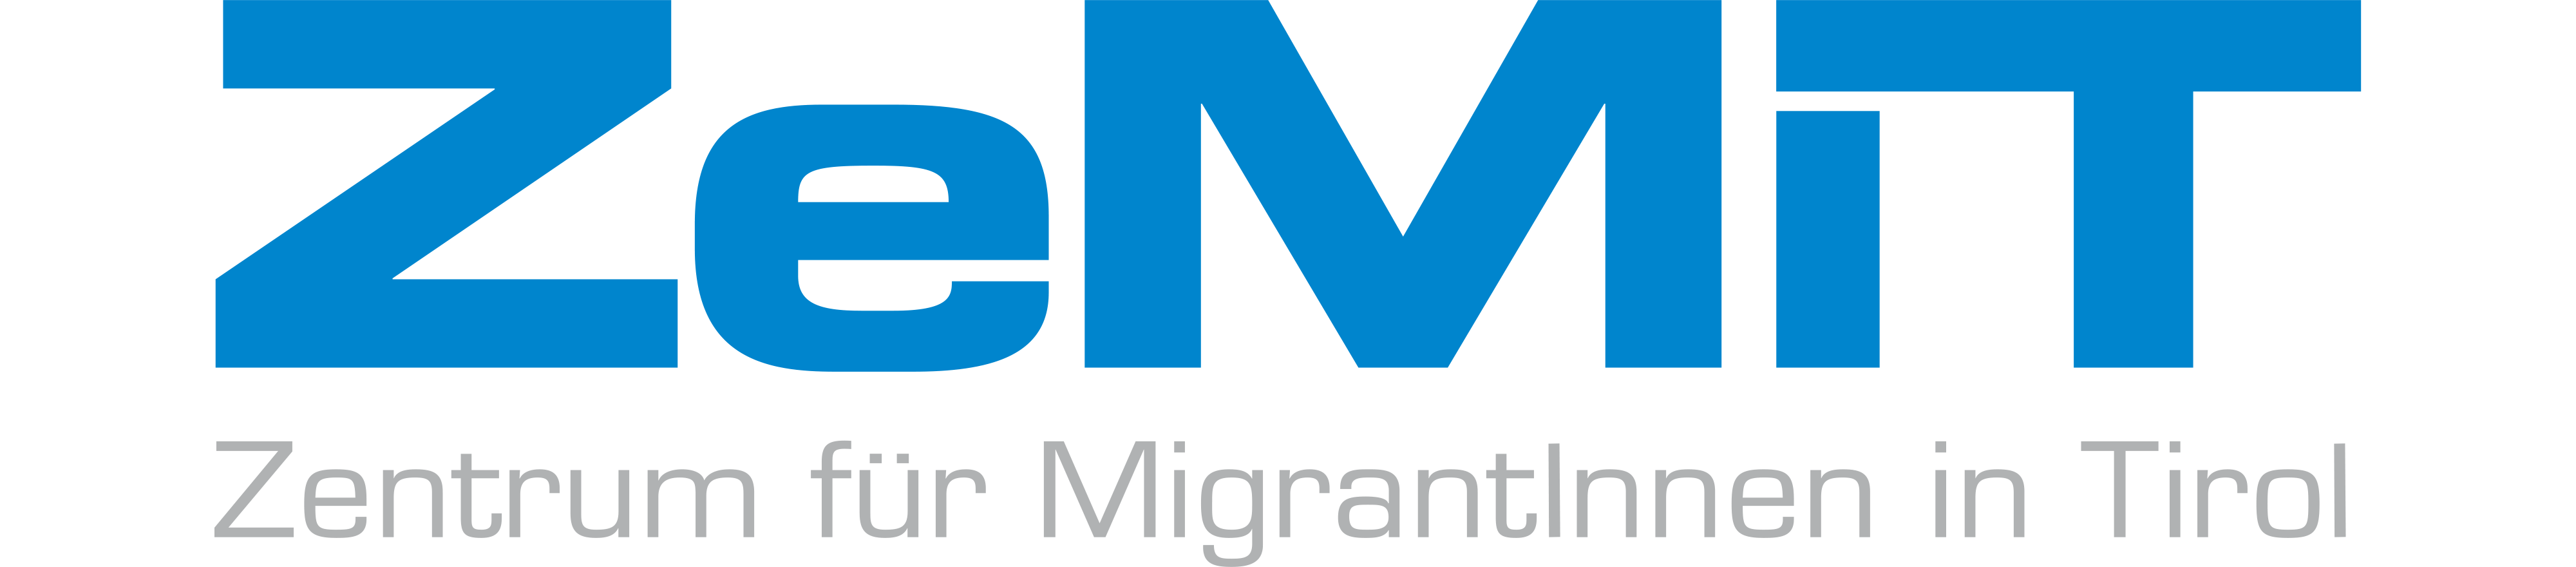 ZeMiT – Zentrum für Migrantinnen und Migranten in Tirol